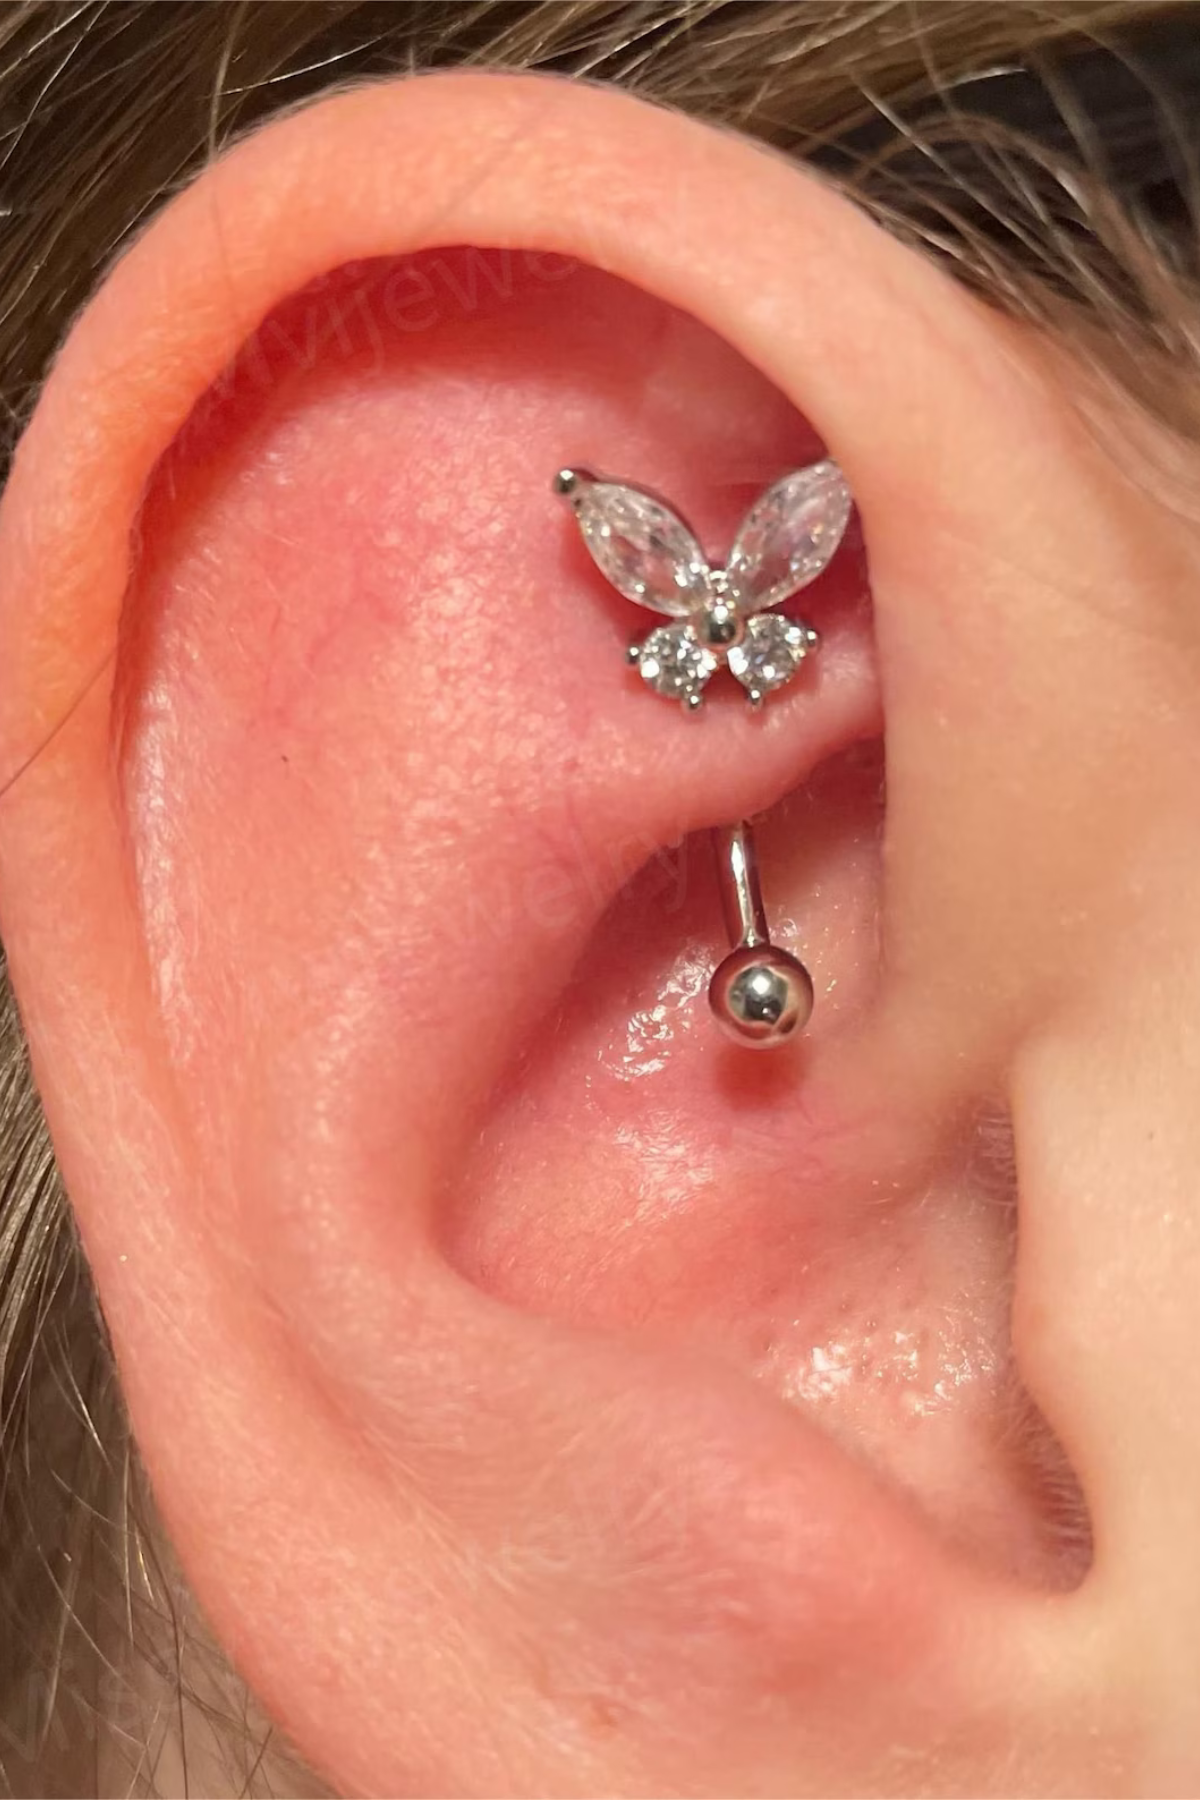 silver butterfly barbell earring in rook piercing